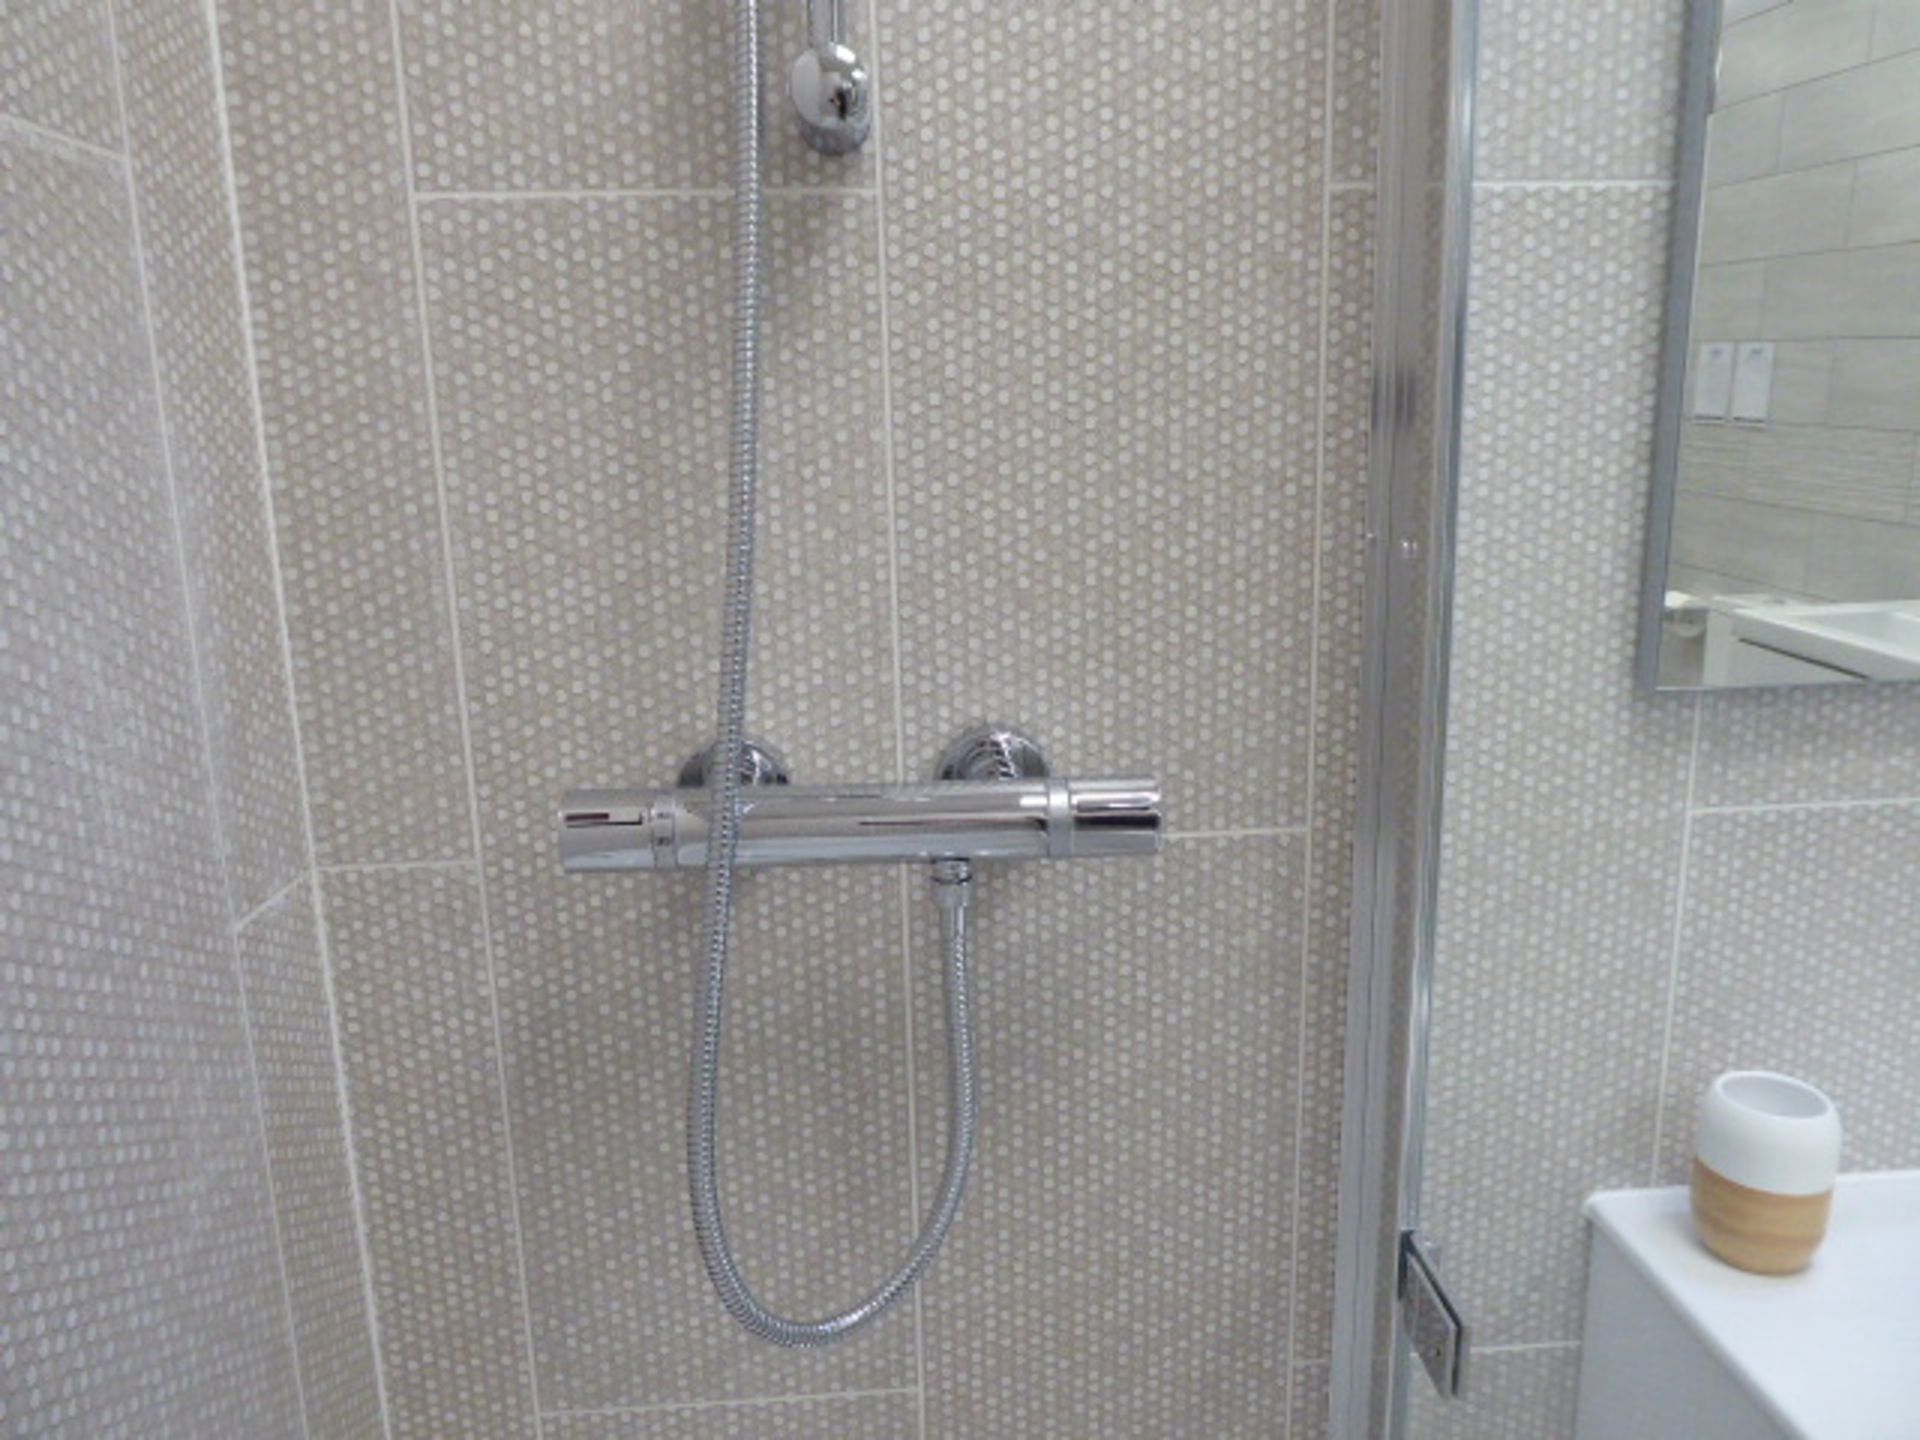 Roca Victoria-N bathroom comprising bath with filler, single door shower screen, mixer shower, - Image 7 of 8